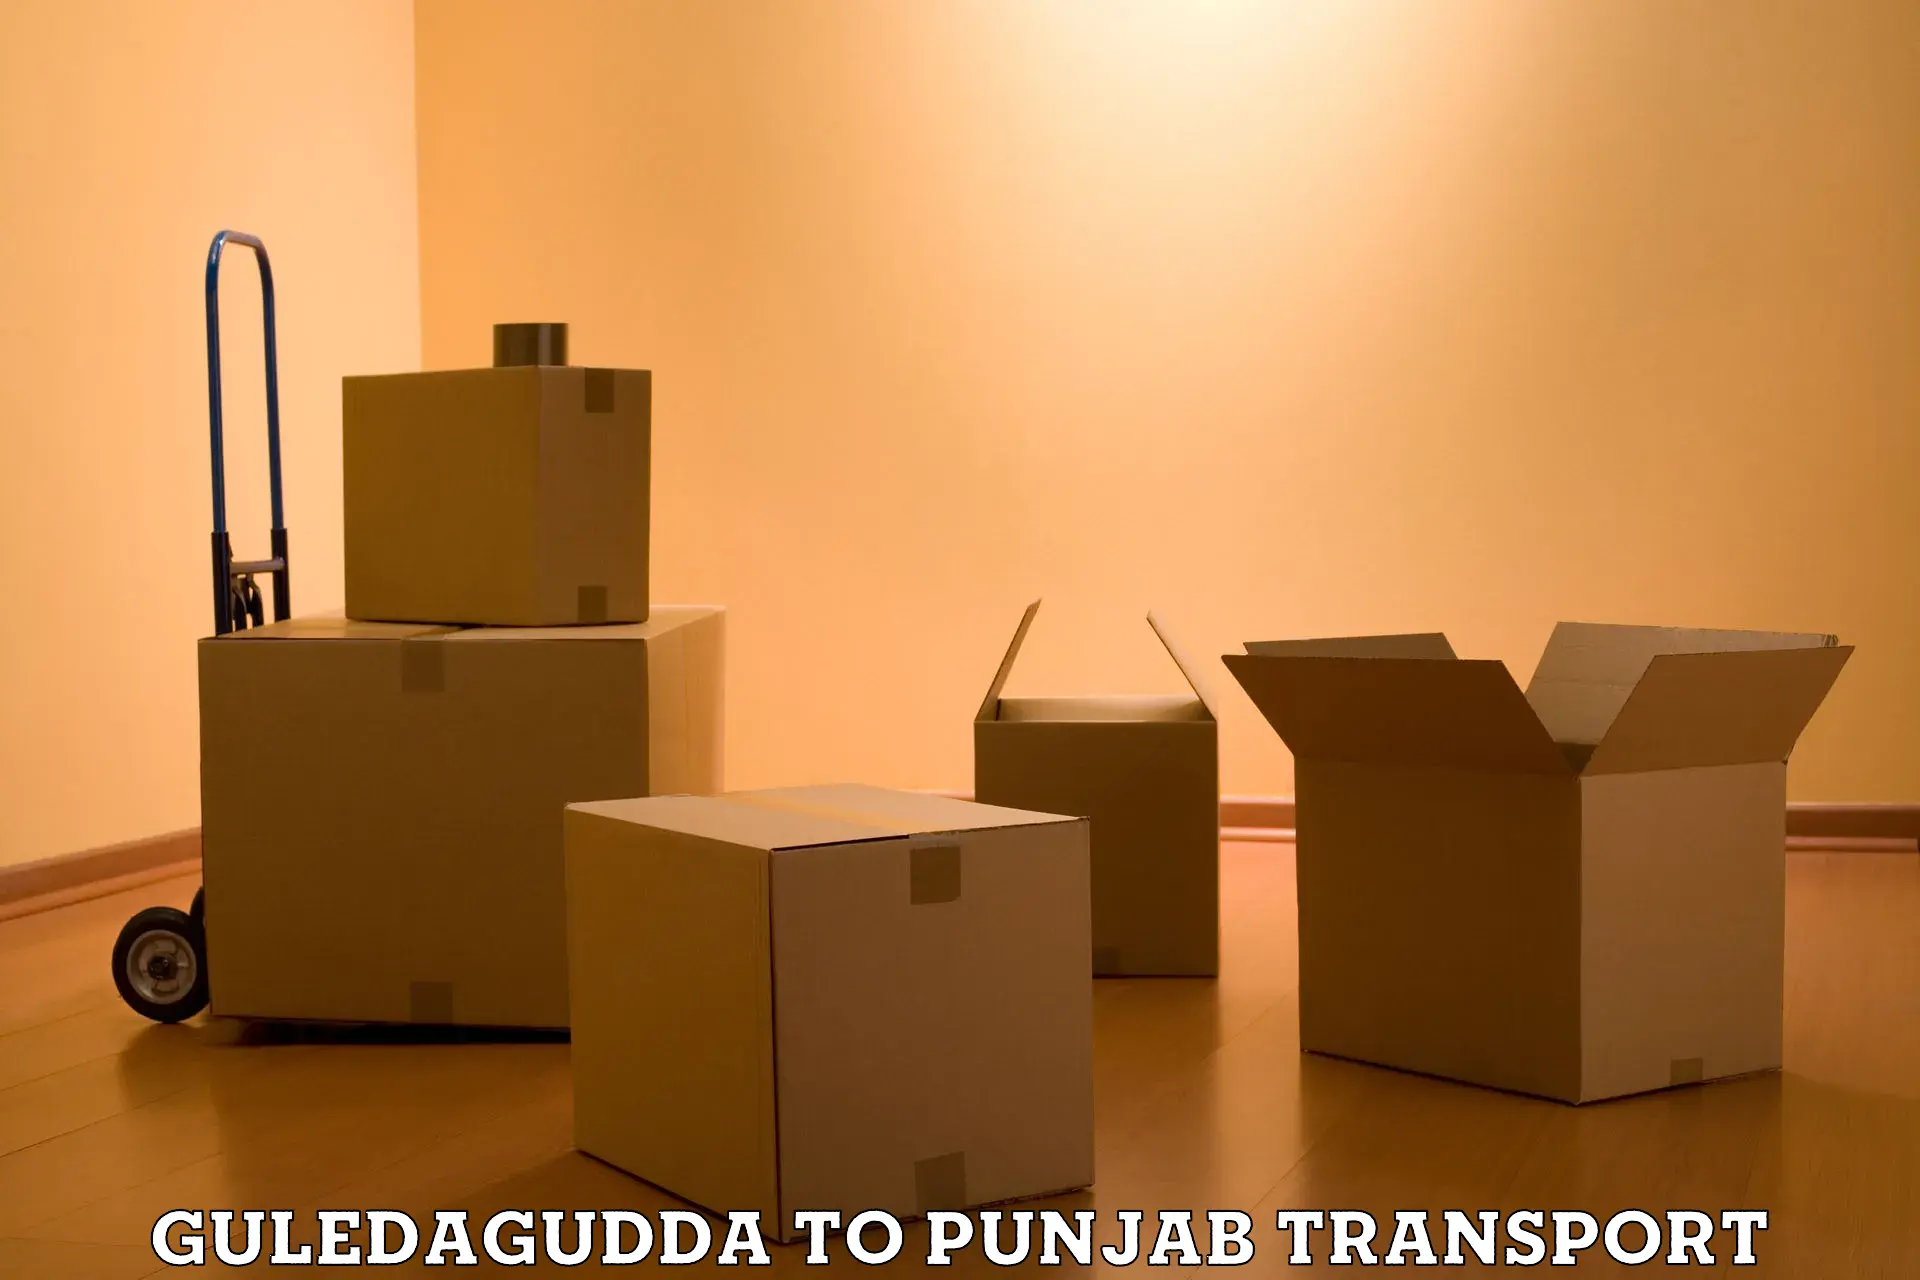 All India transport service Guledagudda to Patran